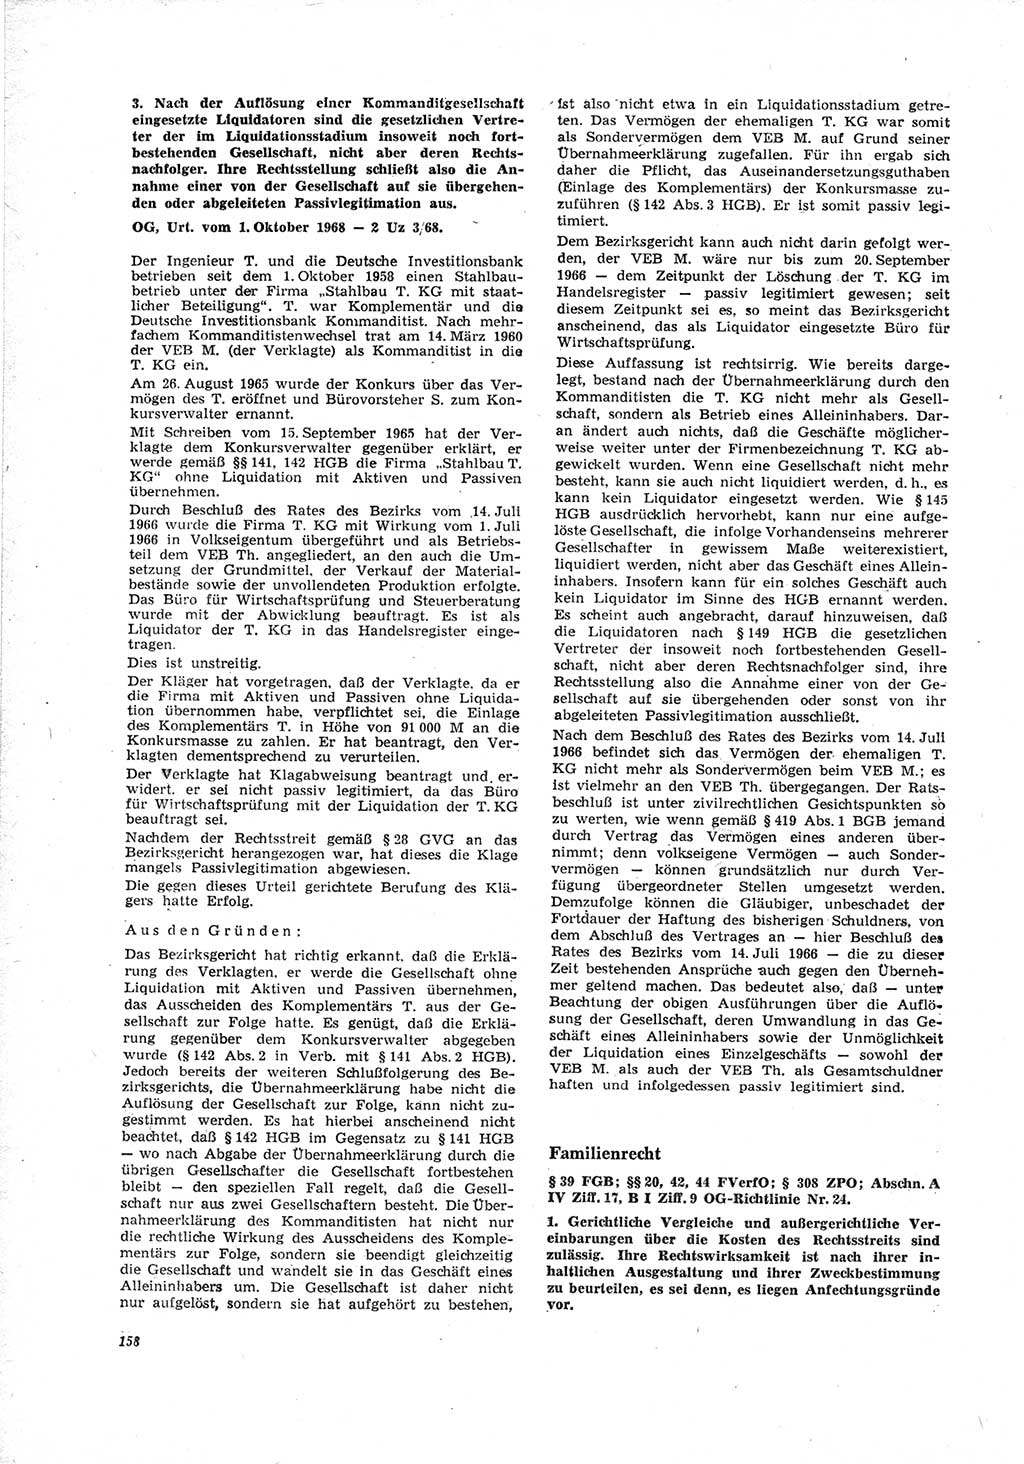 Neue Justiz (NJ), Zeitschrift für Recht und Rechtswissenschaft [Deutsche Demokratische Republik (DDR)], 23. Jahrgang 1969, Seite 158 (NJ DDR 1969, S. 158)